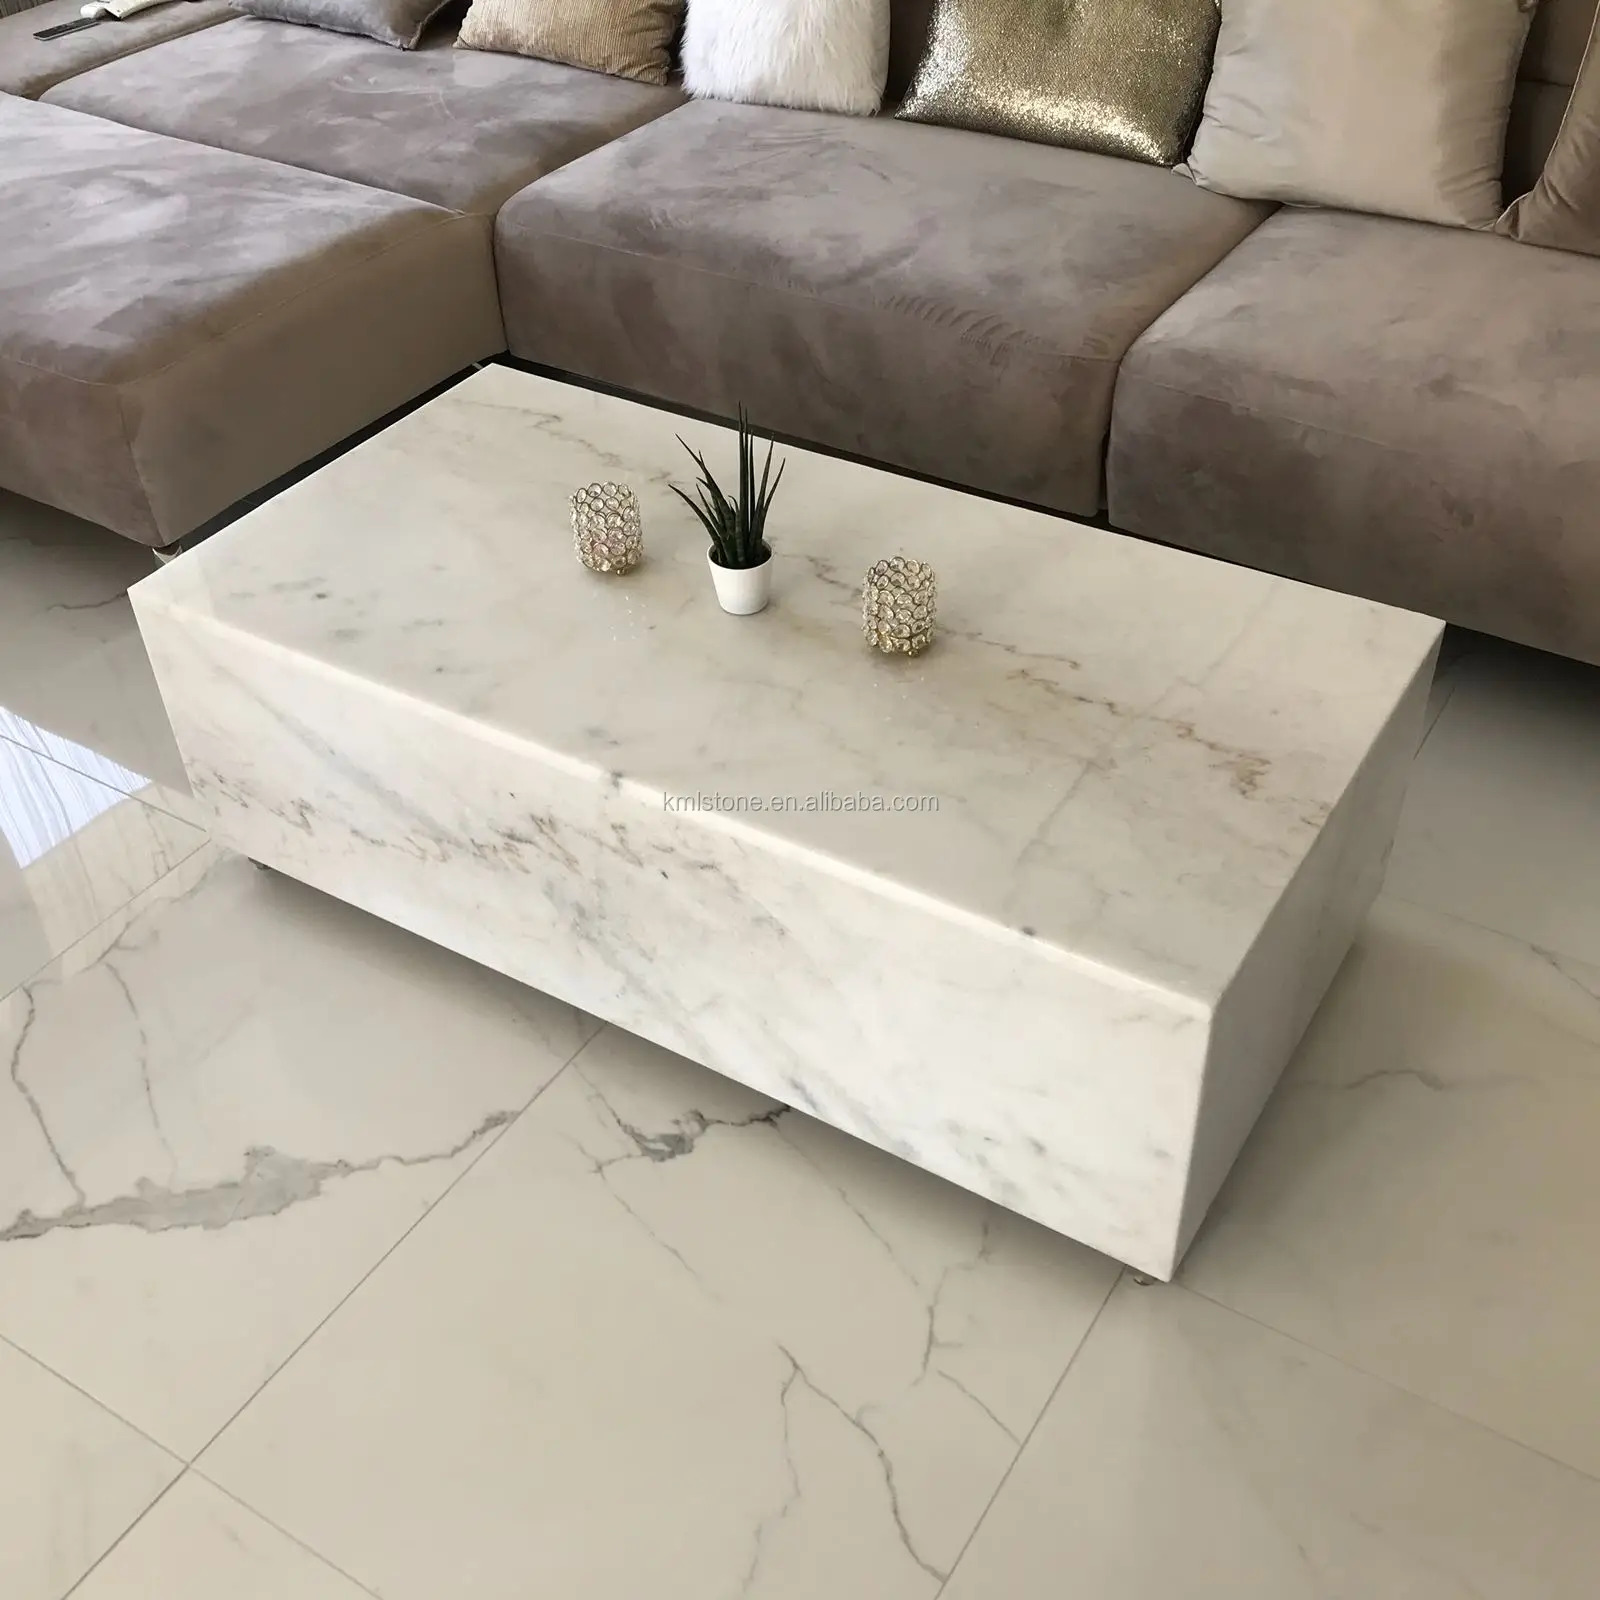 Desain Furnitur Ruang Tamu Meja Marmer Putih Buy Marble Table